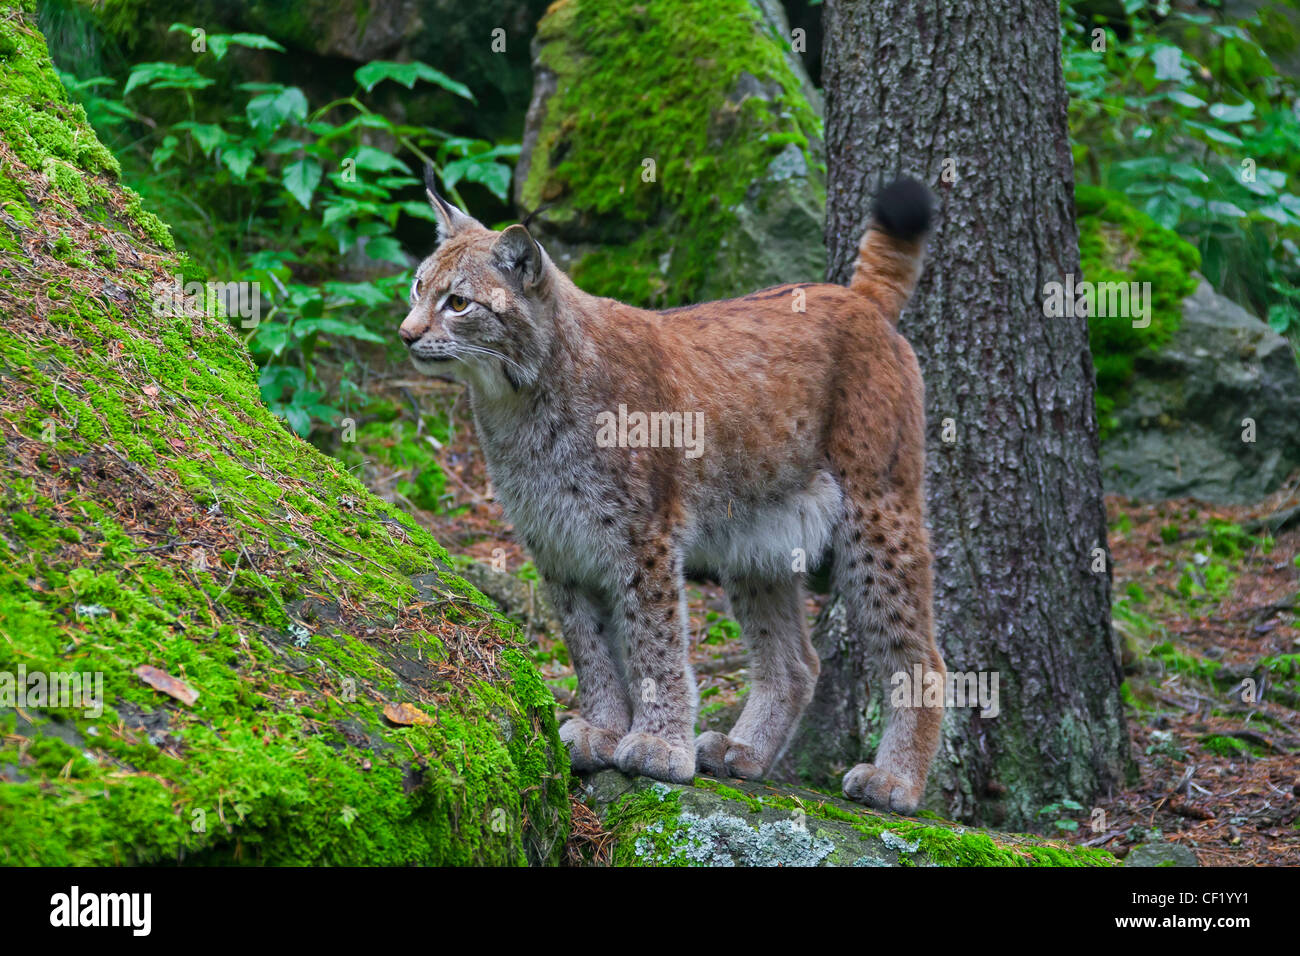 Eurasian lynx (Lynx lynx) in forest, Sweden Stock Photo